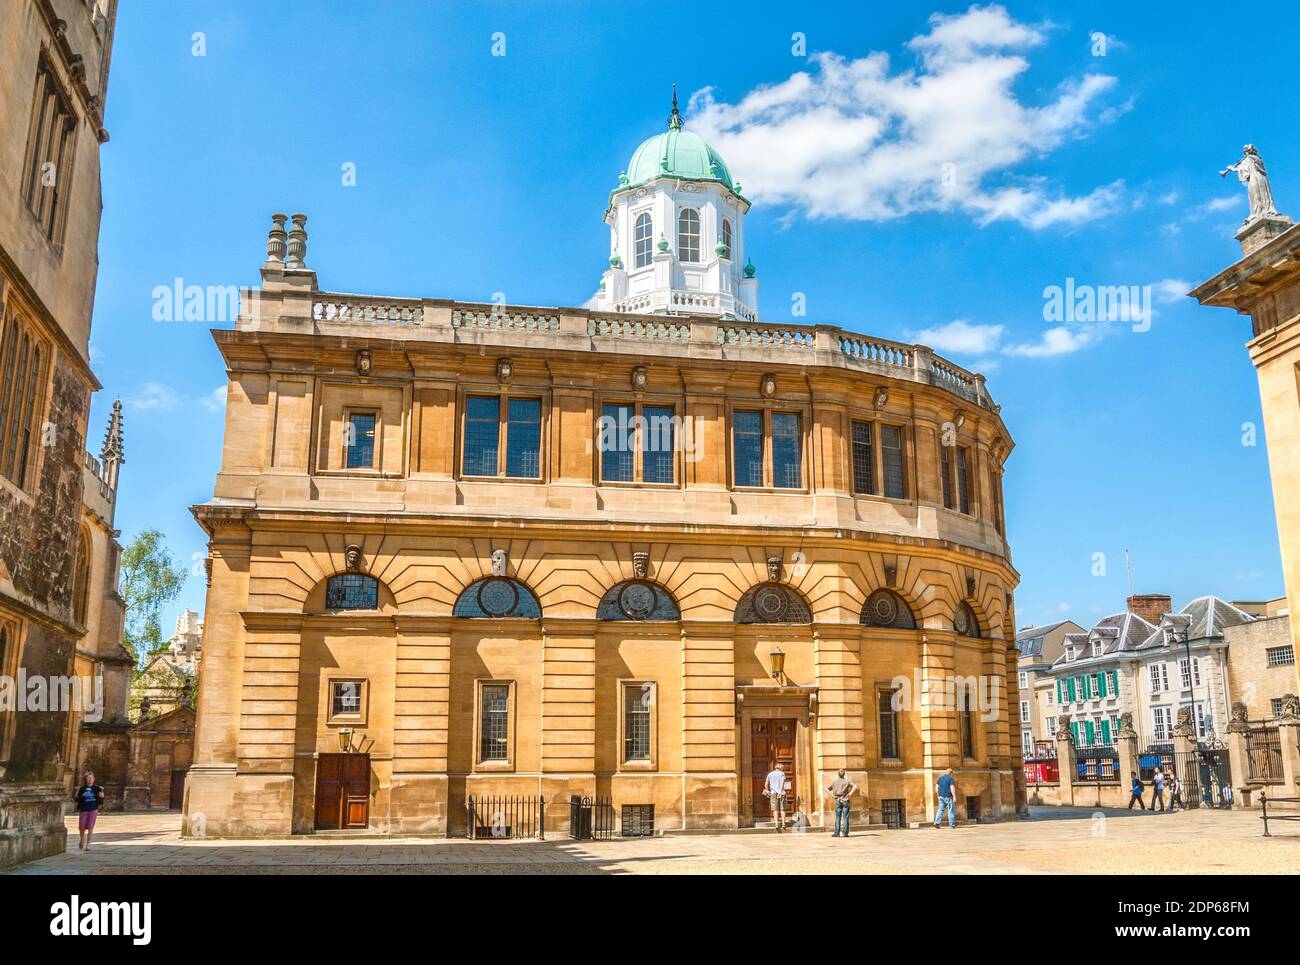 Théâtre Sheldonian construit de 1664 à 1668 pour l'Université d'Oxford, Oxfordshire, Angleterre Banque D'Images